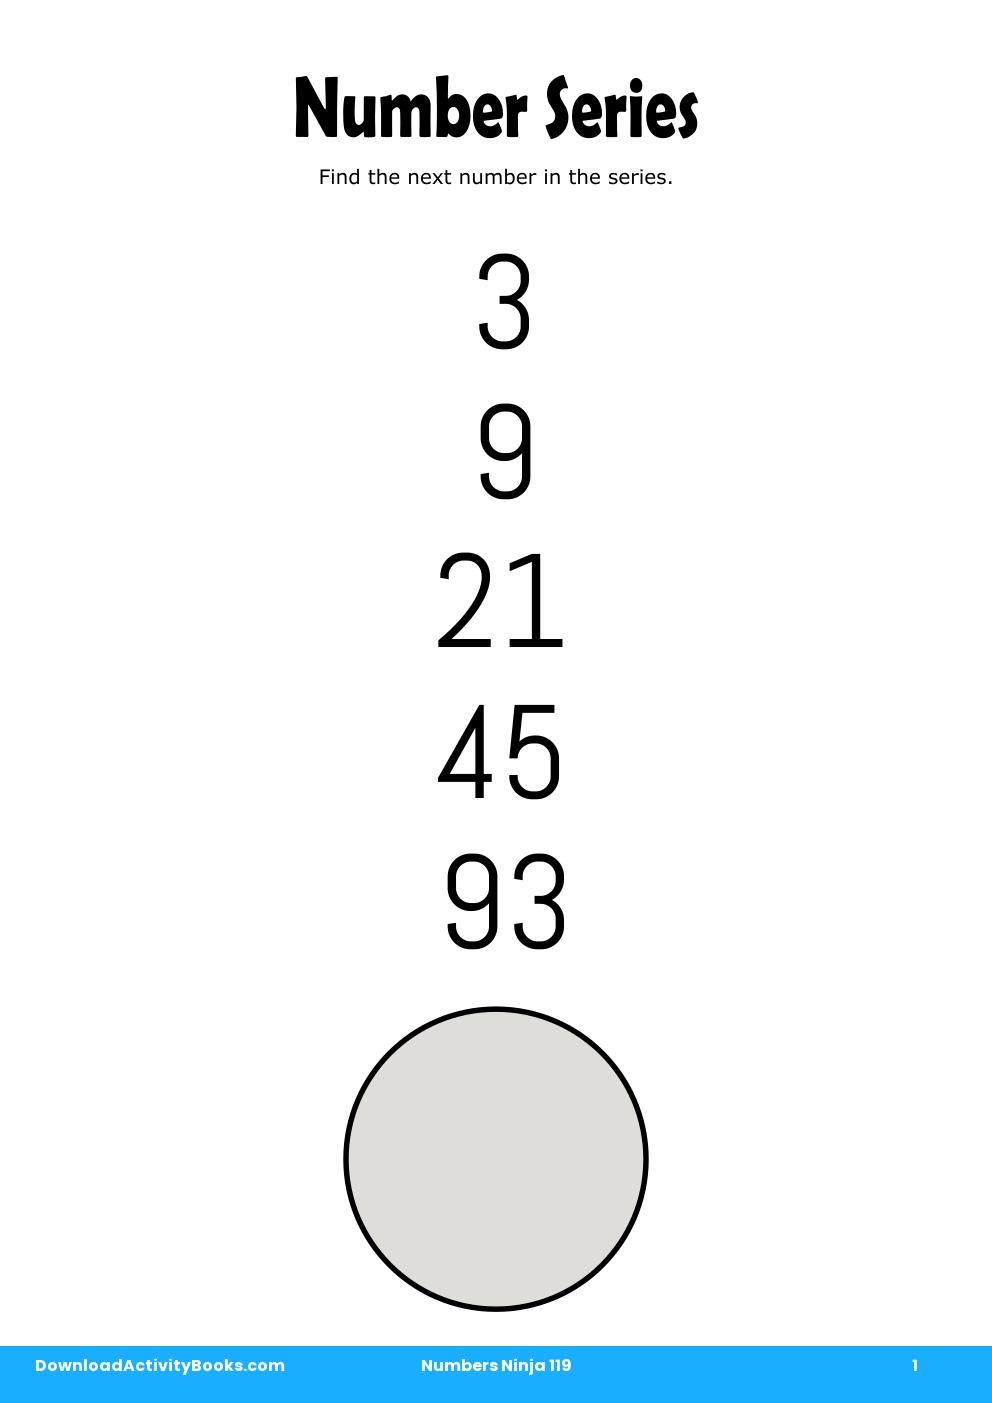 Number Series in Numbers Ninja 119